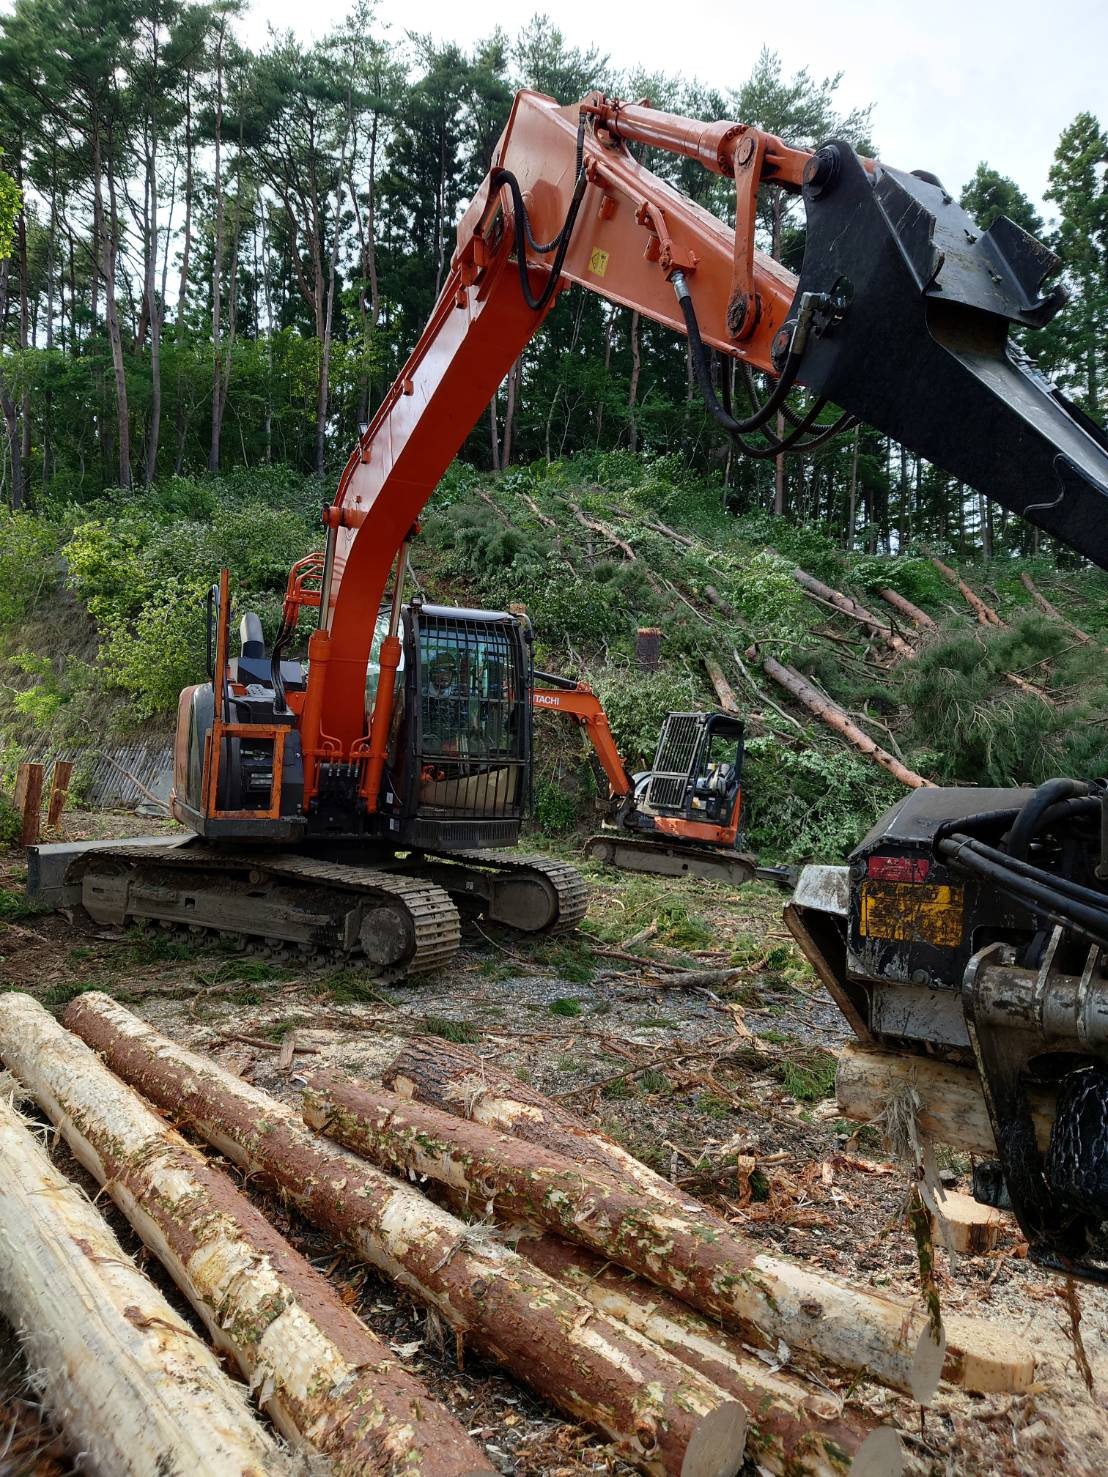 ー林業作業を円滑化できる さまざまな高性能林業機械を紹介ー